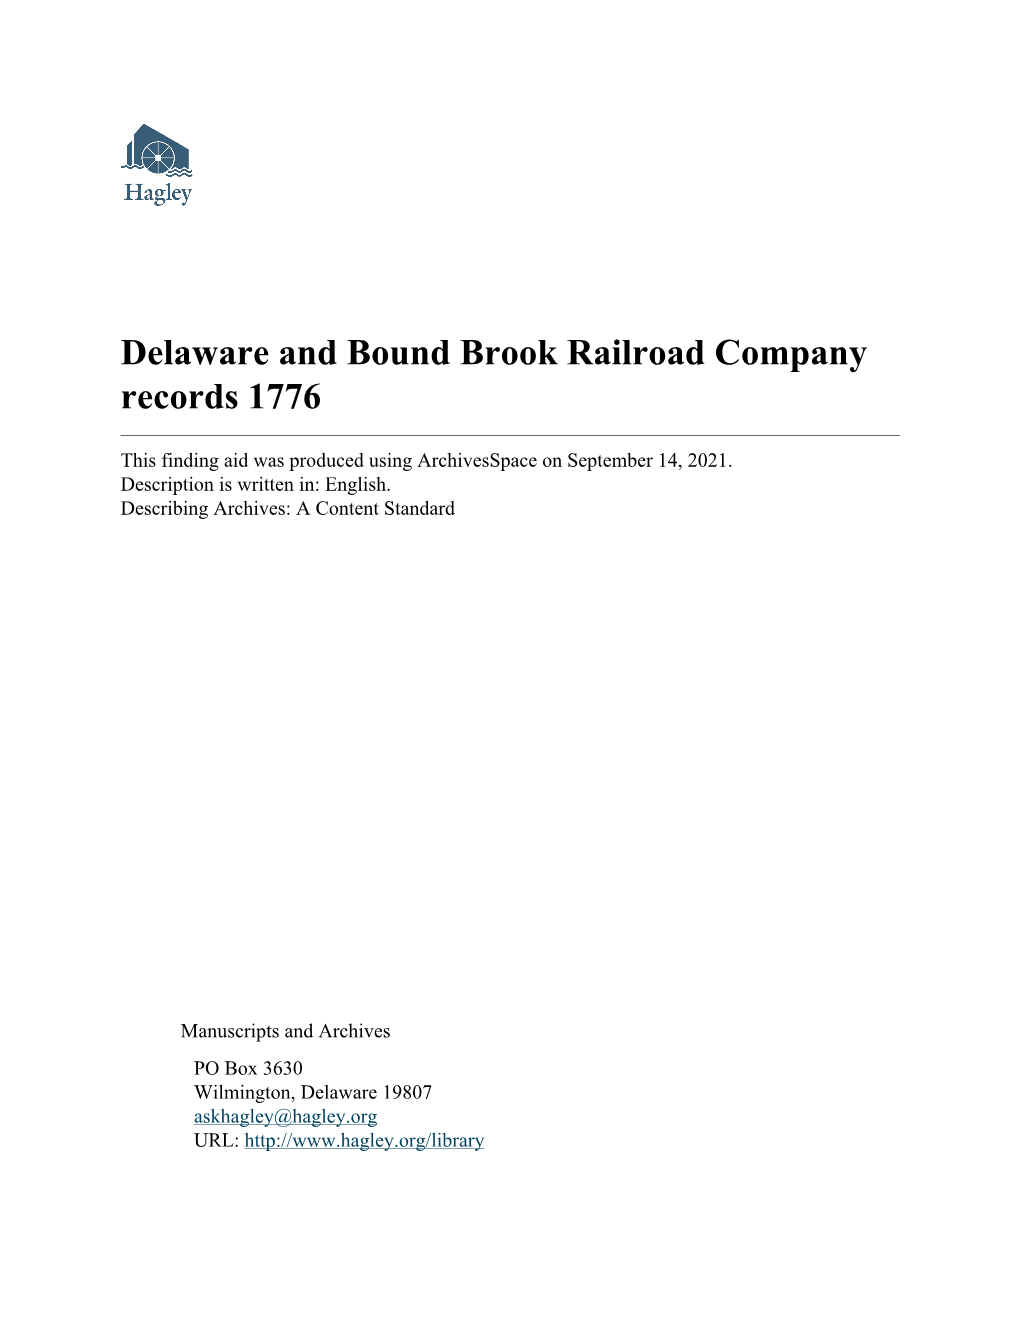 Delaware and Bound Brook Railroad Company Records 1776